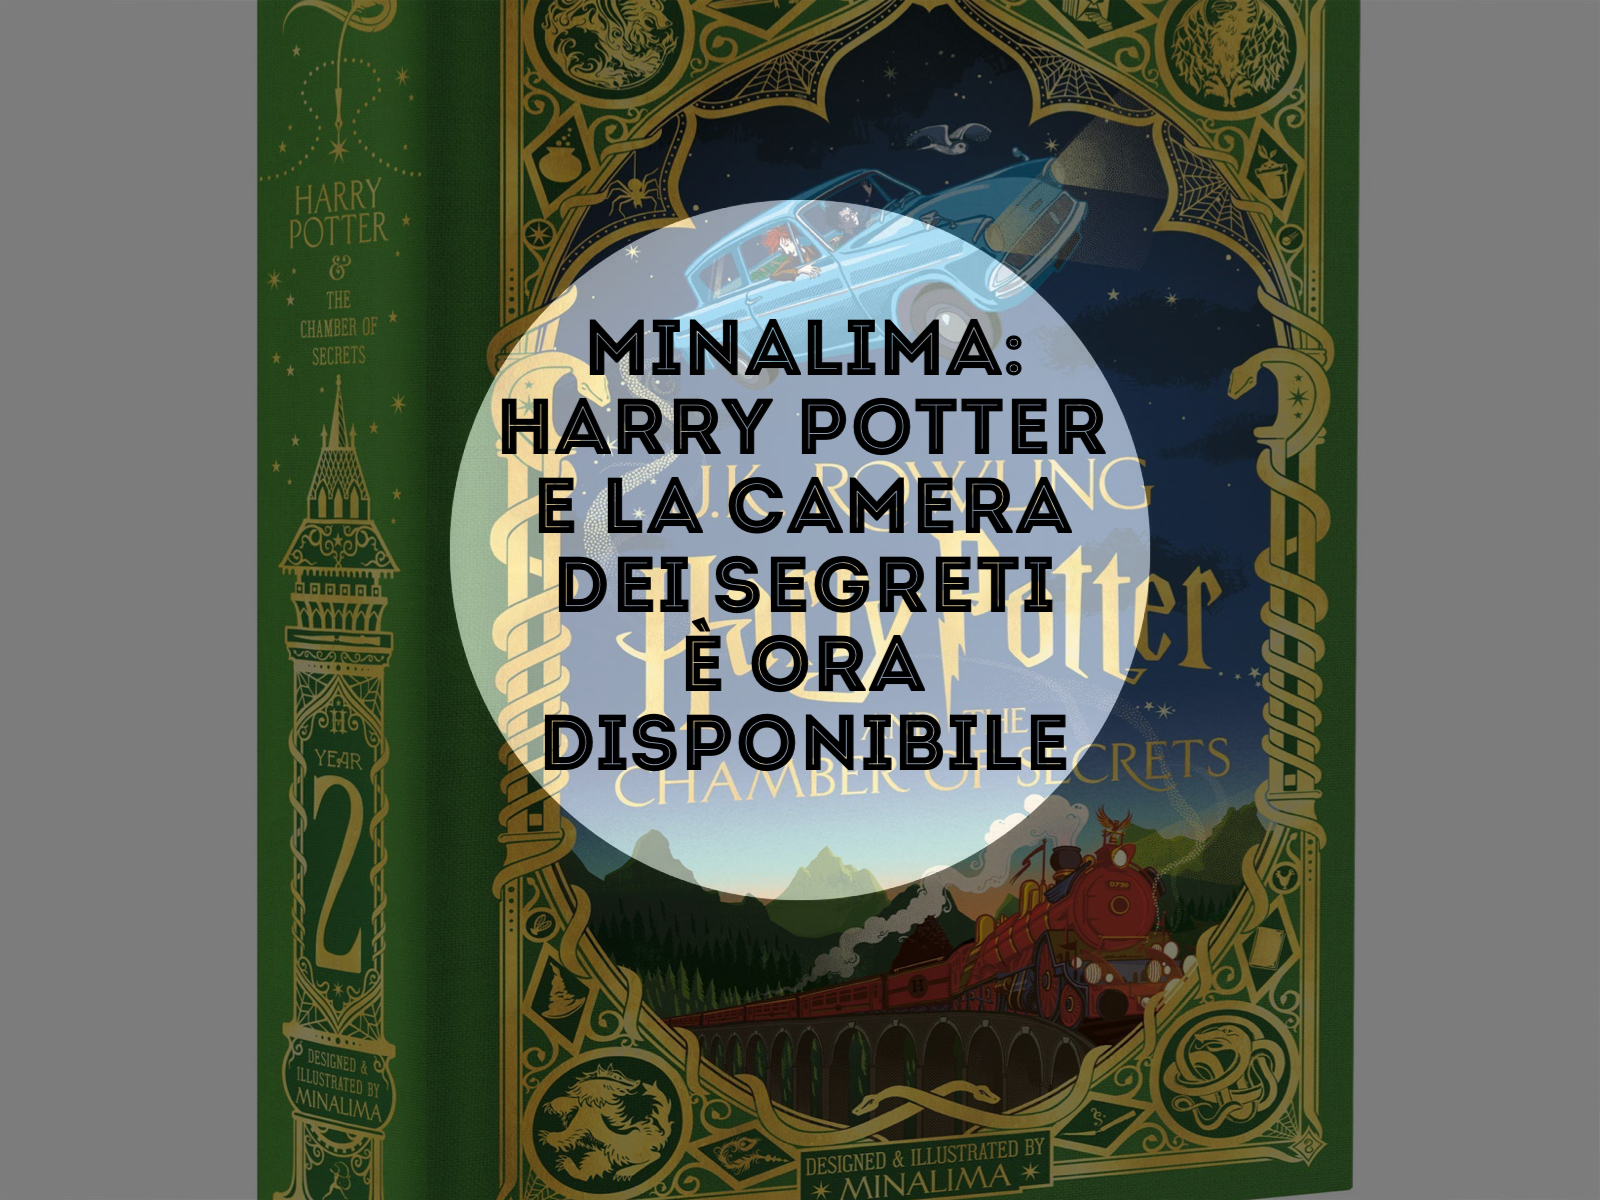 MinaLima: Harry Potter e la camera dei segreti è ora disponibile